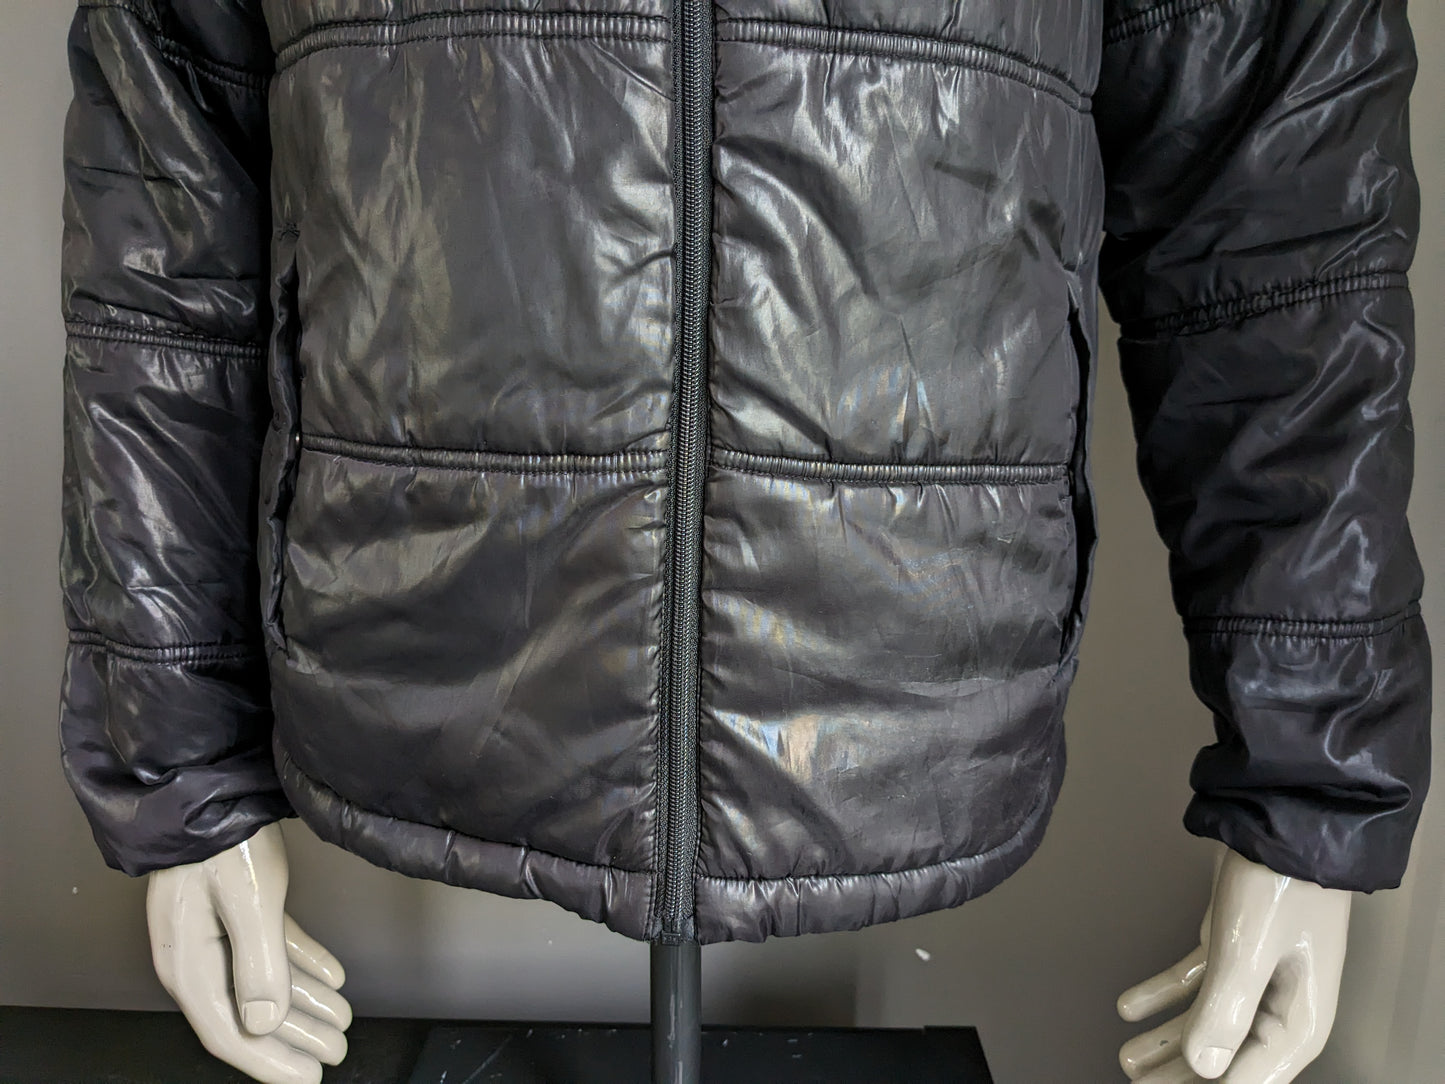 Le Coq Sportif matelassé veste d'hiver avec hotte de département. Couleur gris noir. Taille M.